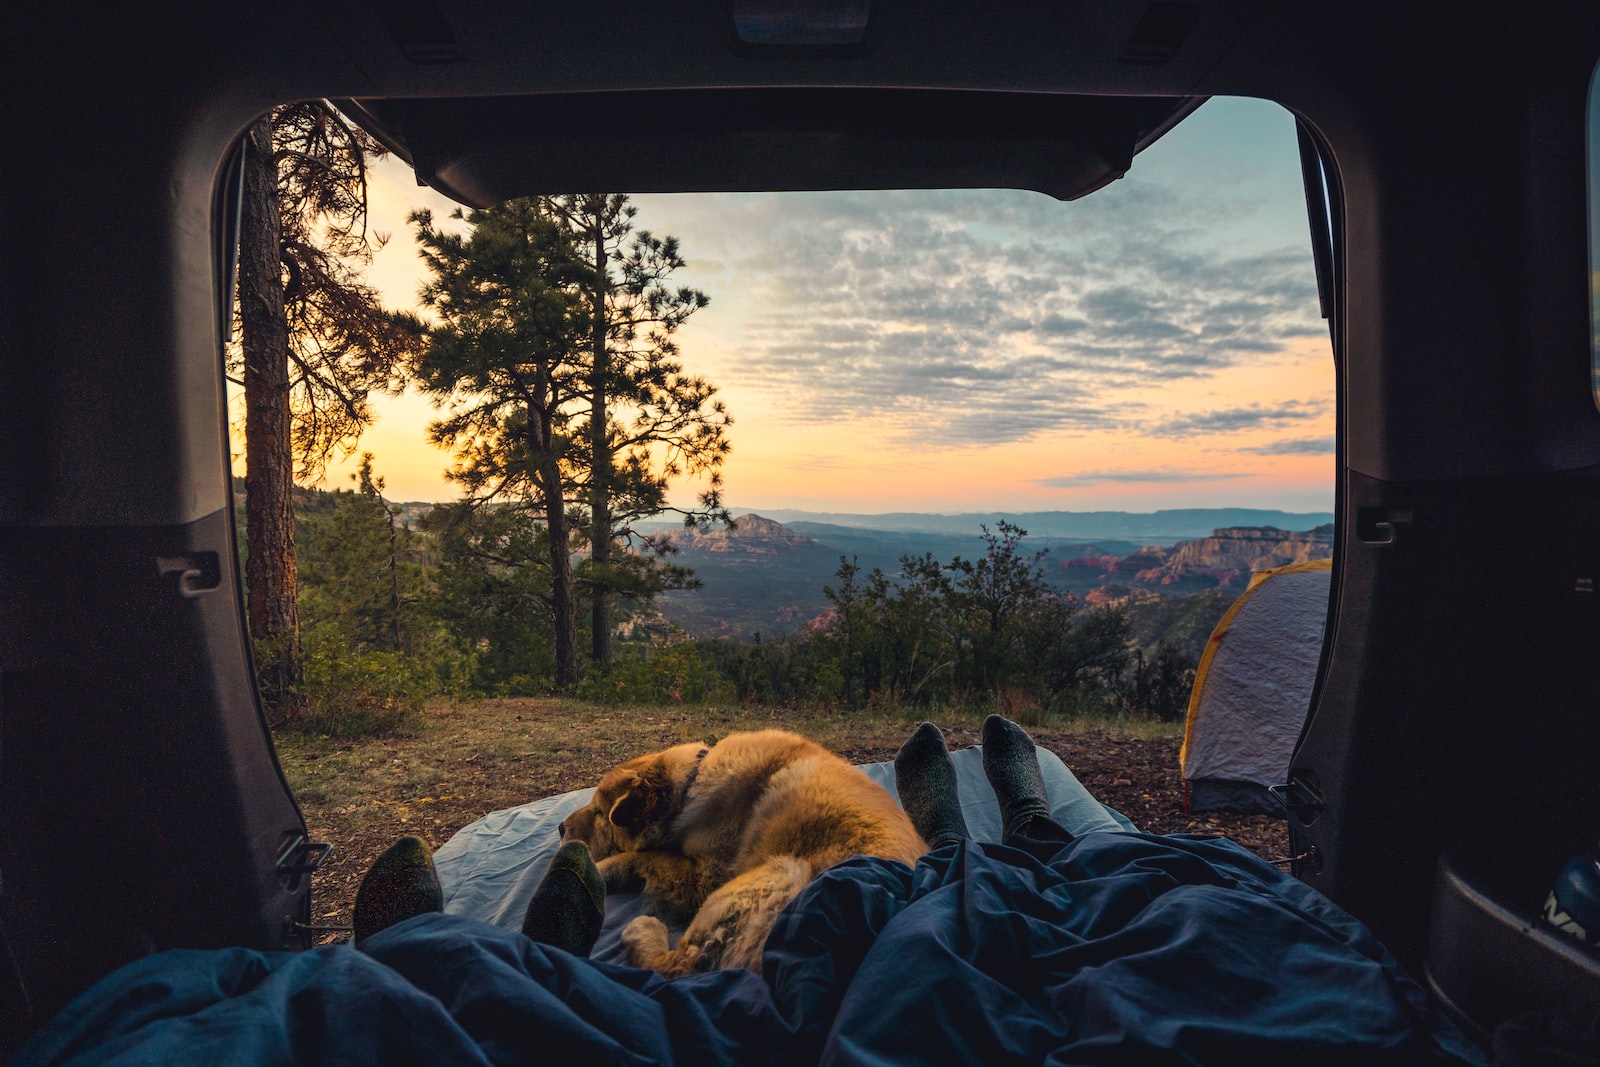 Budget voyage en camping-car